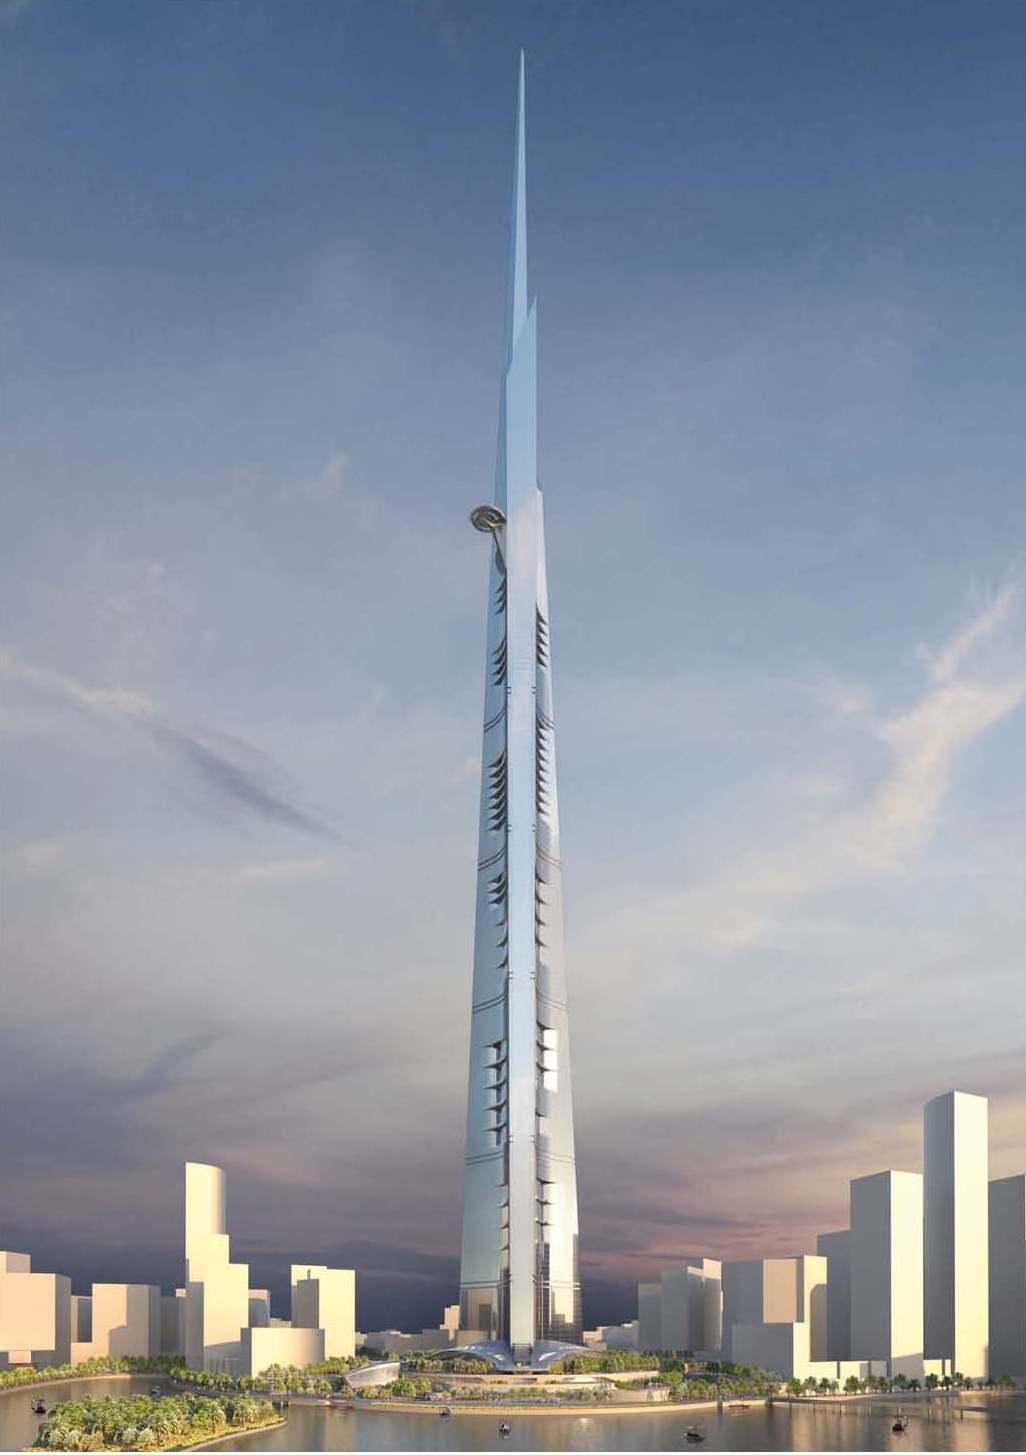 年中完美收官 米6体育
6月斩获世界第一高1007米沙特王国塔